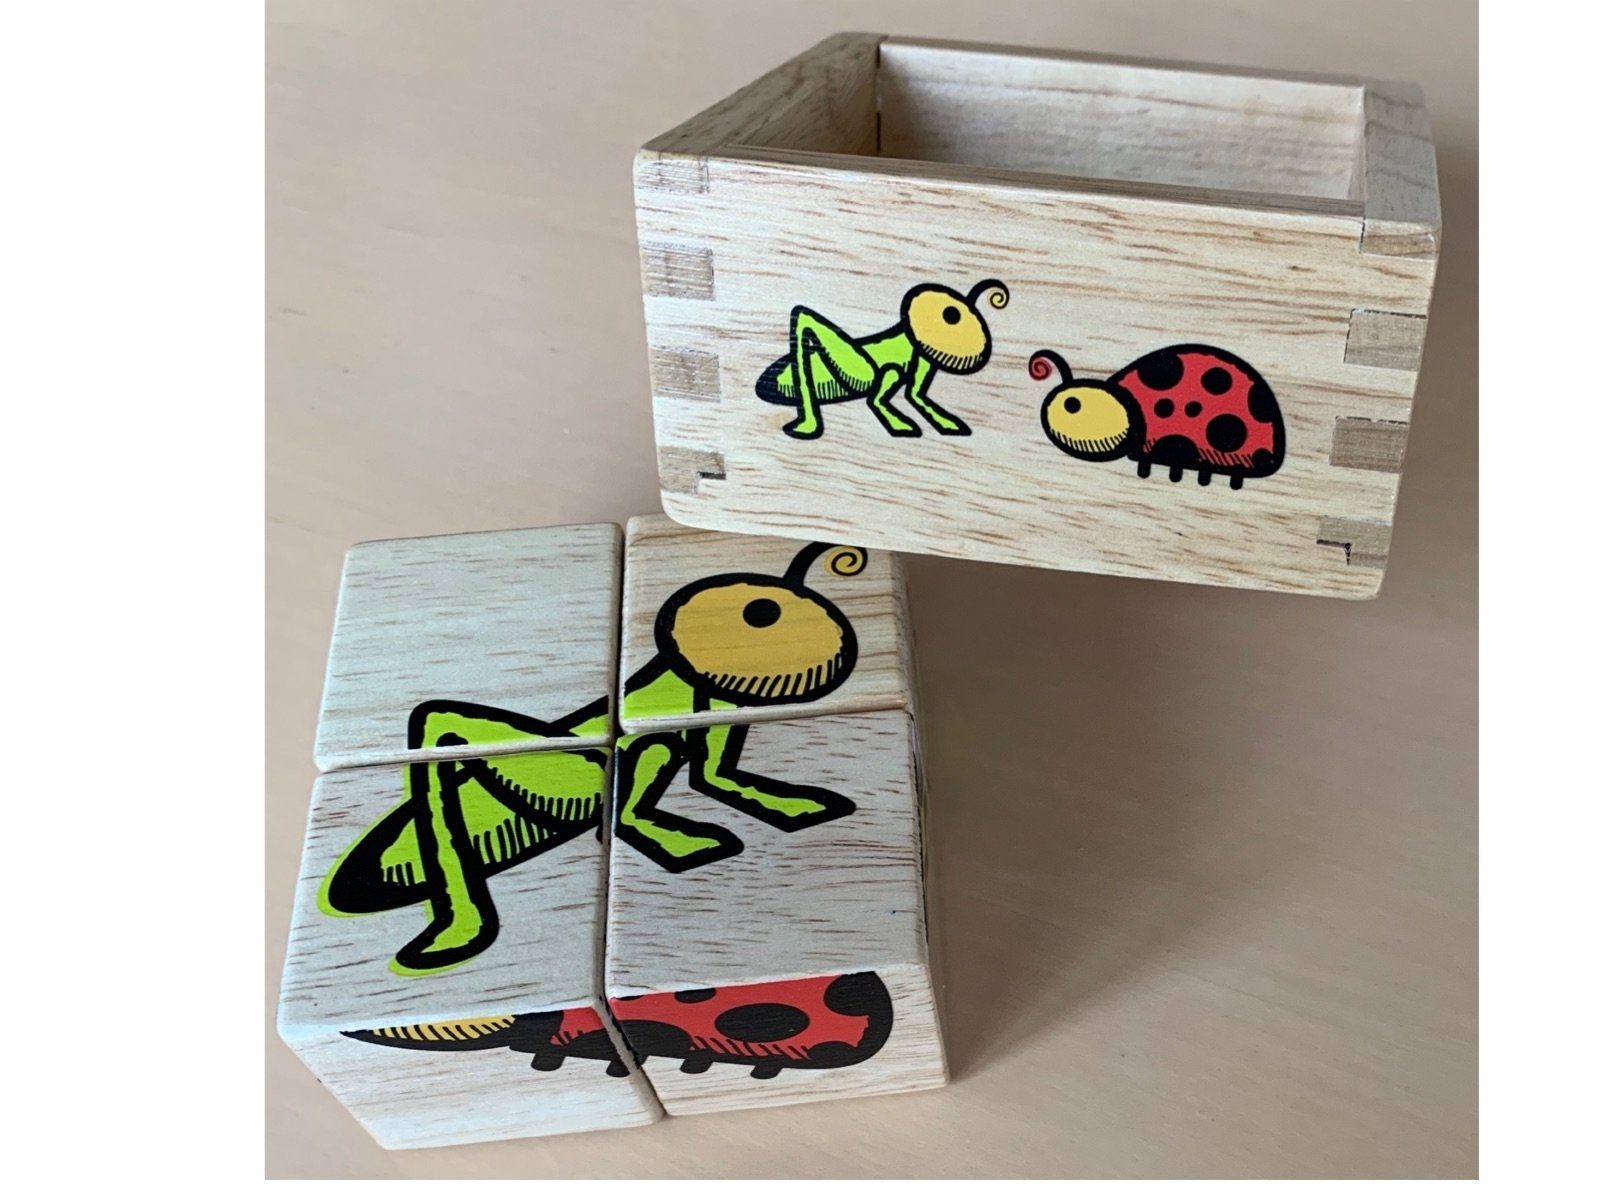 Holz Puzzle und Puzzle, gewonnenen 4 Tiere, schönes aus Anfänger Puzzleteile, & Trend Style Gummibaum einem Biene Würfel LK In verschiedene Holzpuzzle nachhaltig Freunde